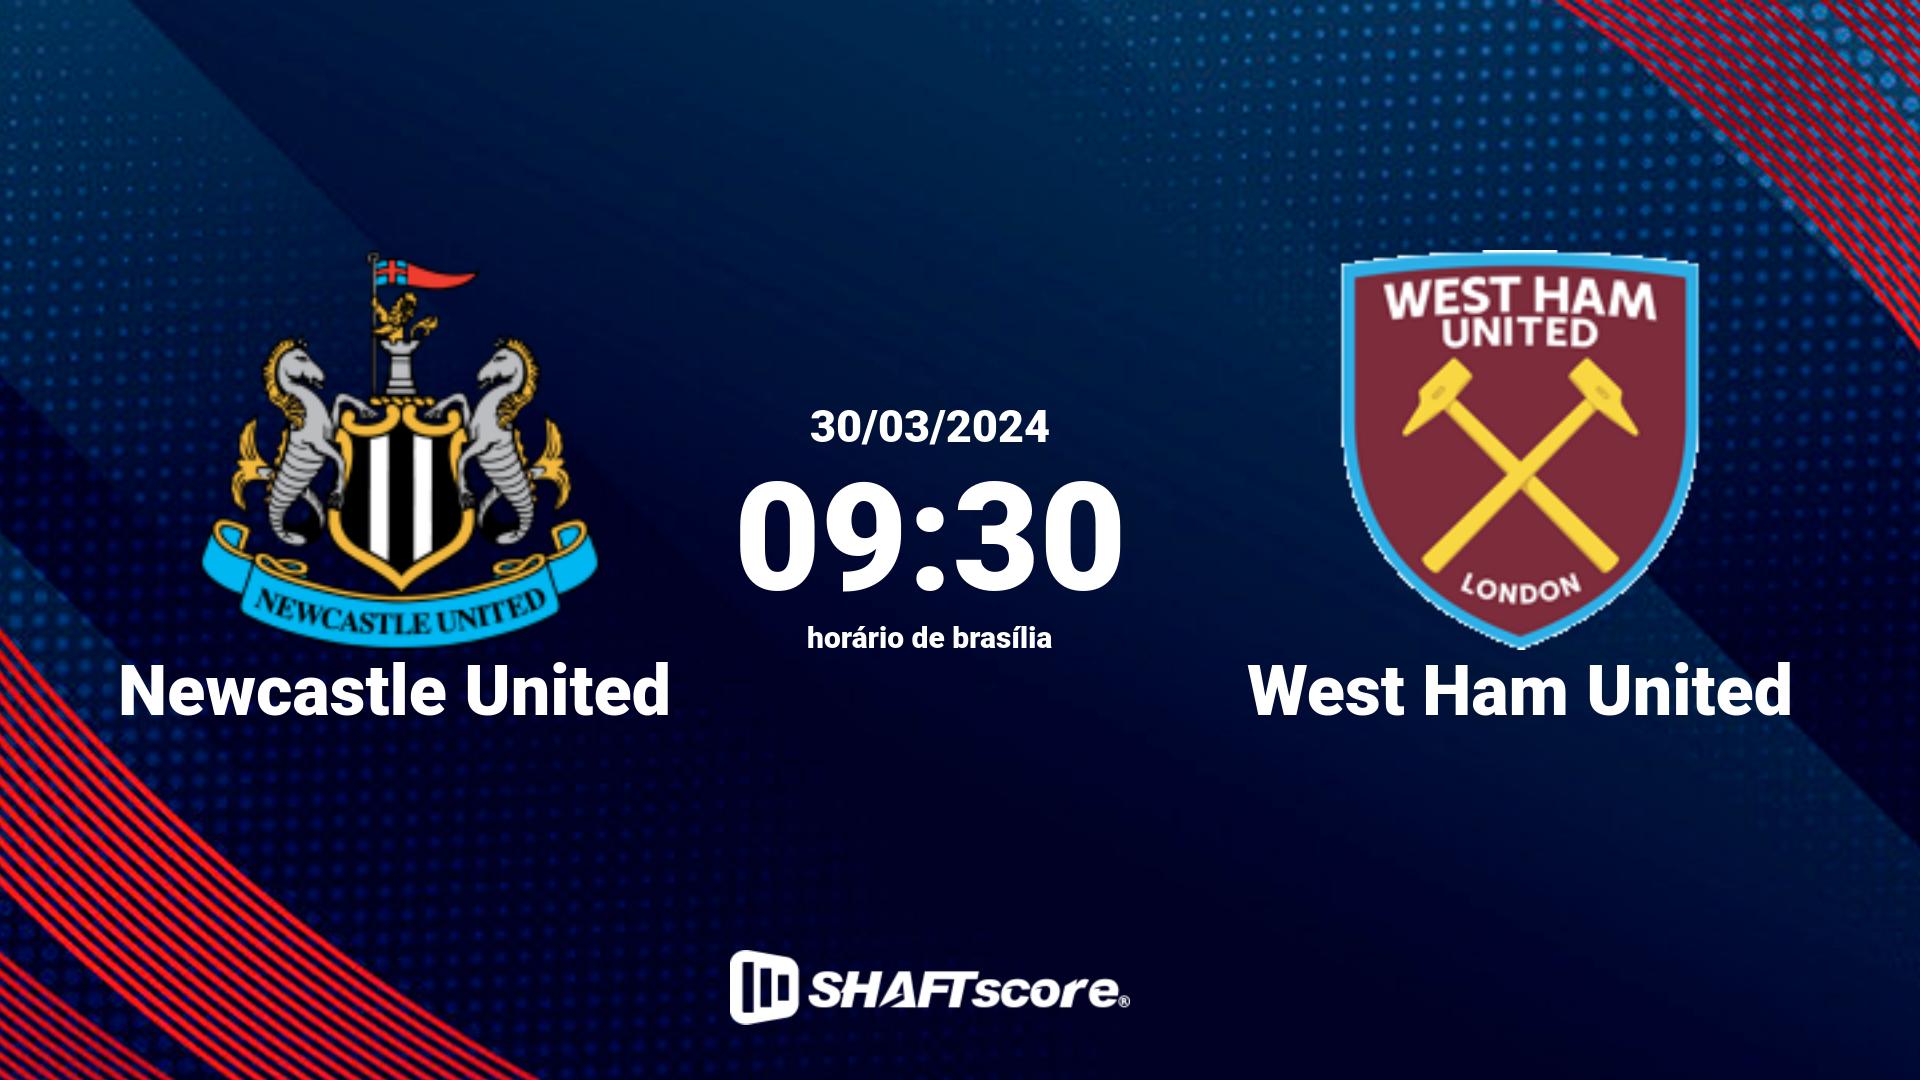 Estatísticas do jogo Newcastle United vs West Ham United 30.03 09:30